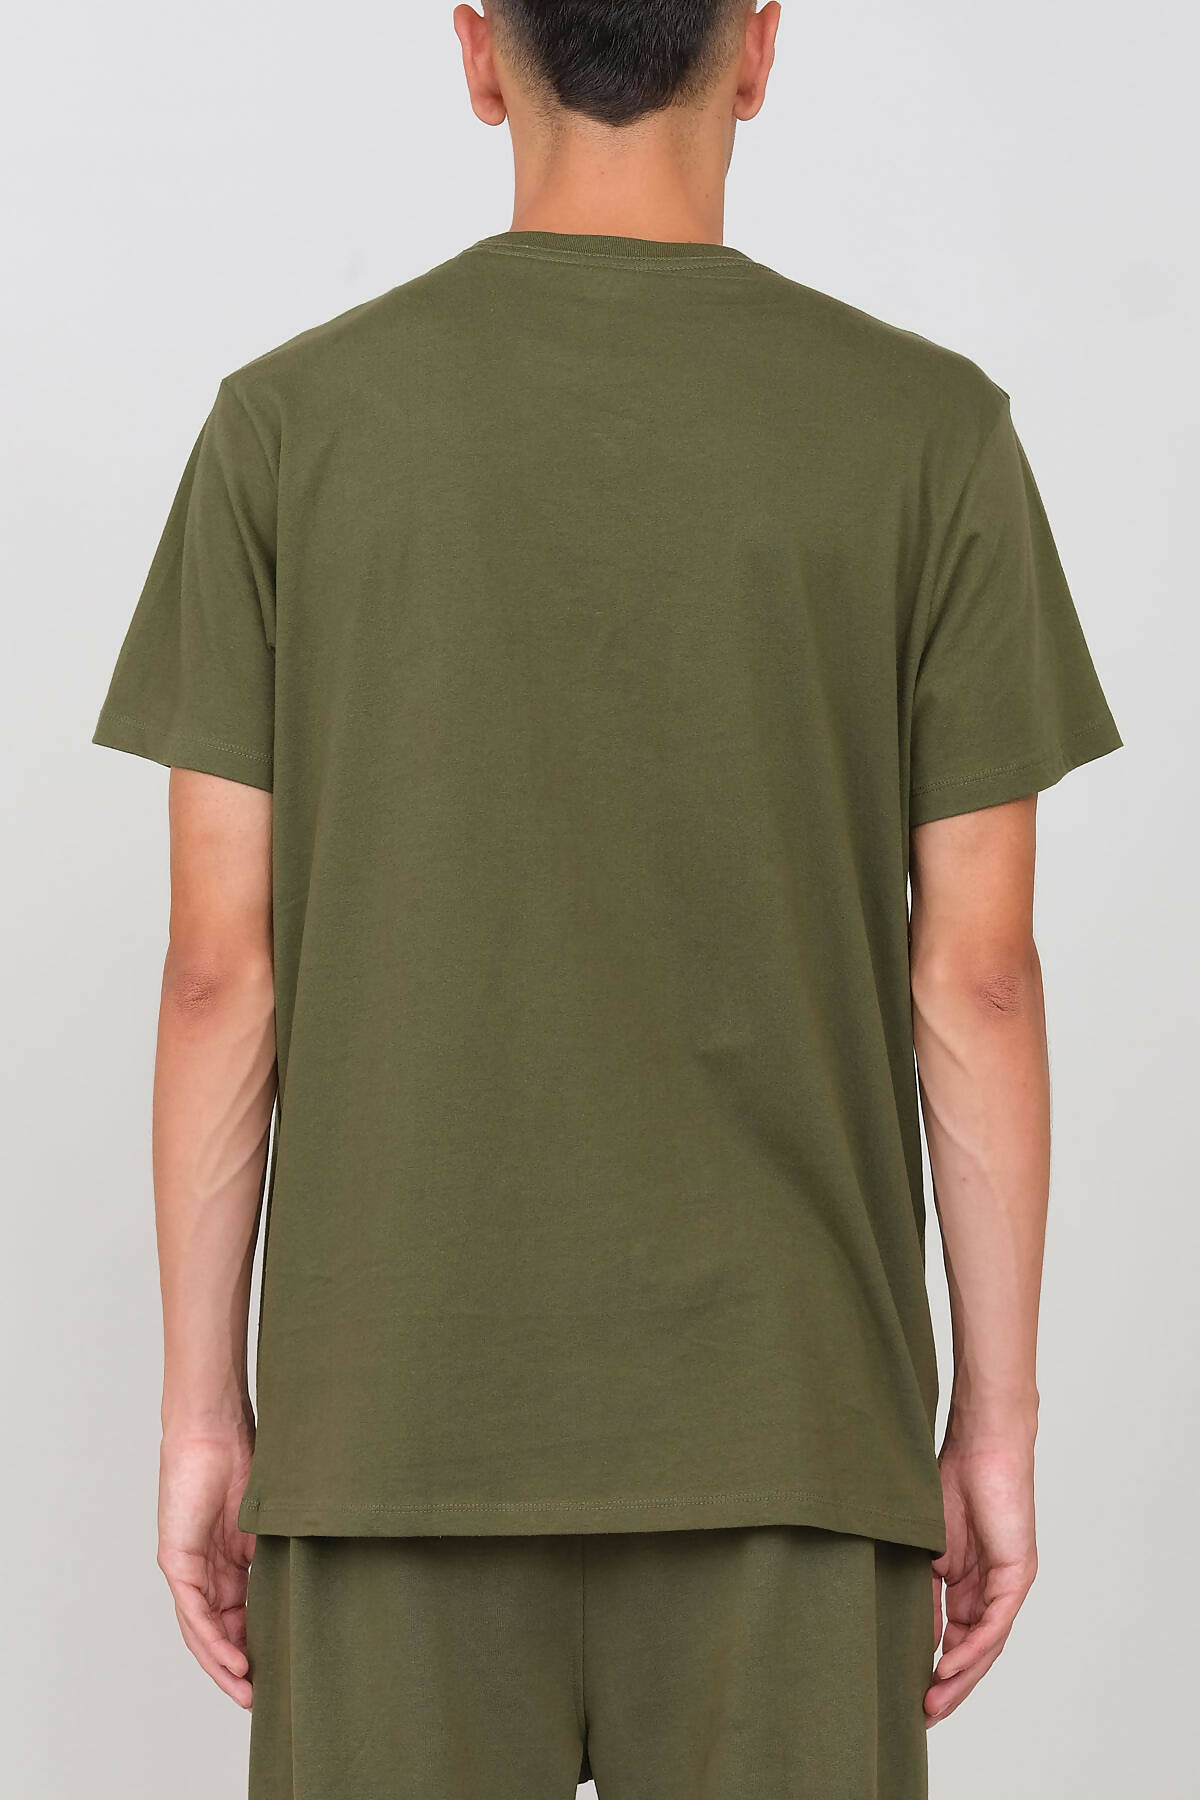 Camiseta Cuello Redondo Verde Militar